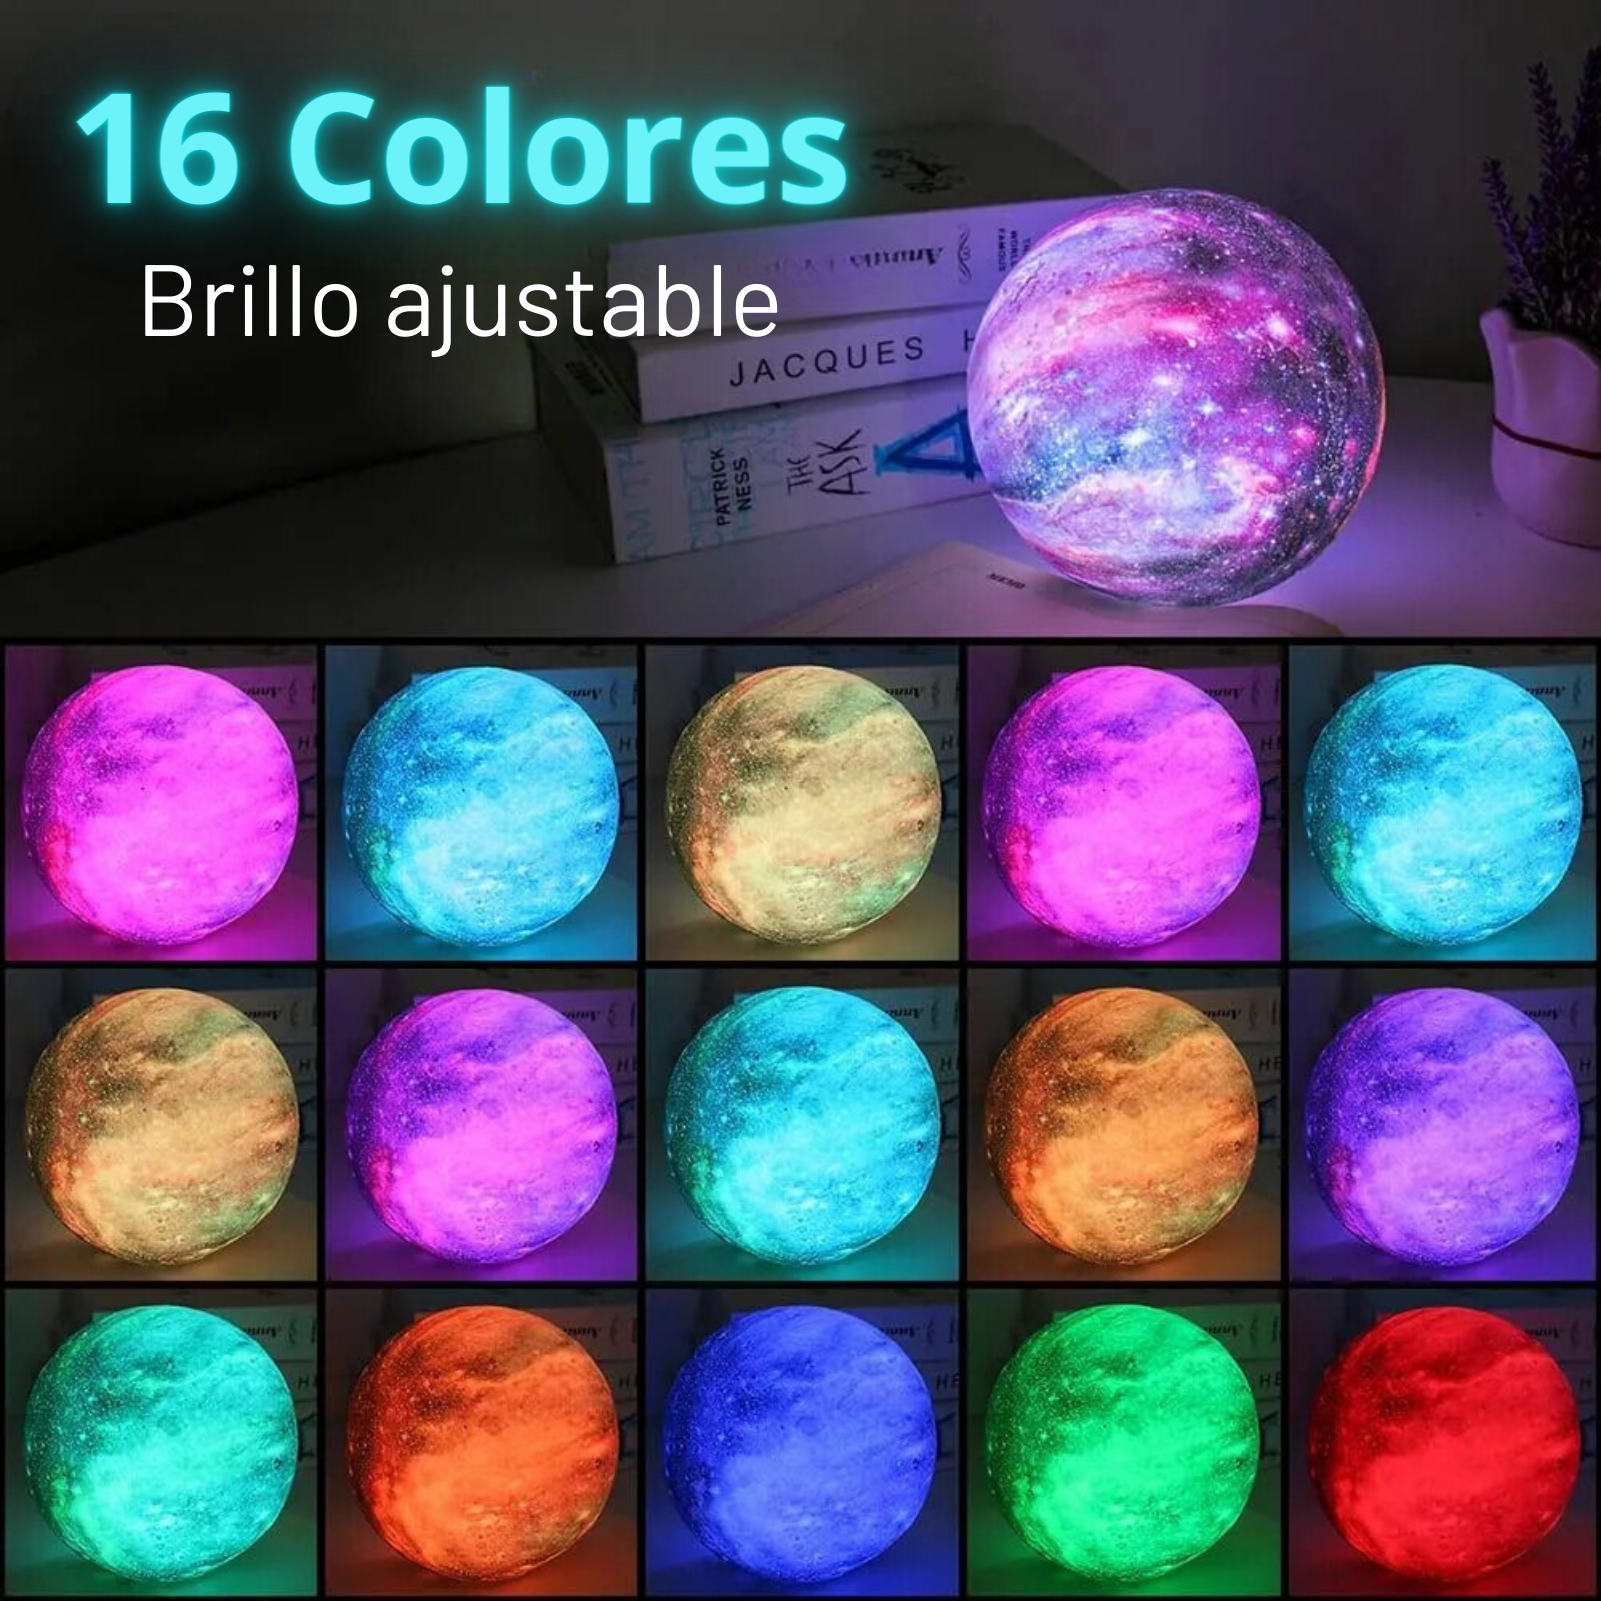 Lámpara Luna - 16 colores